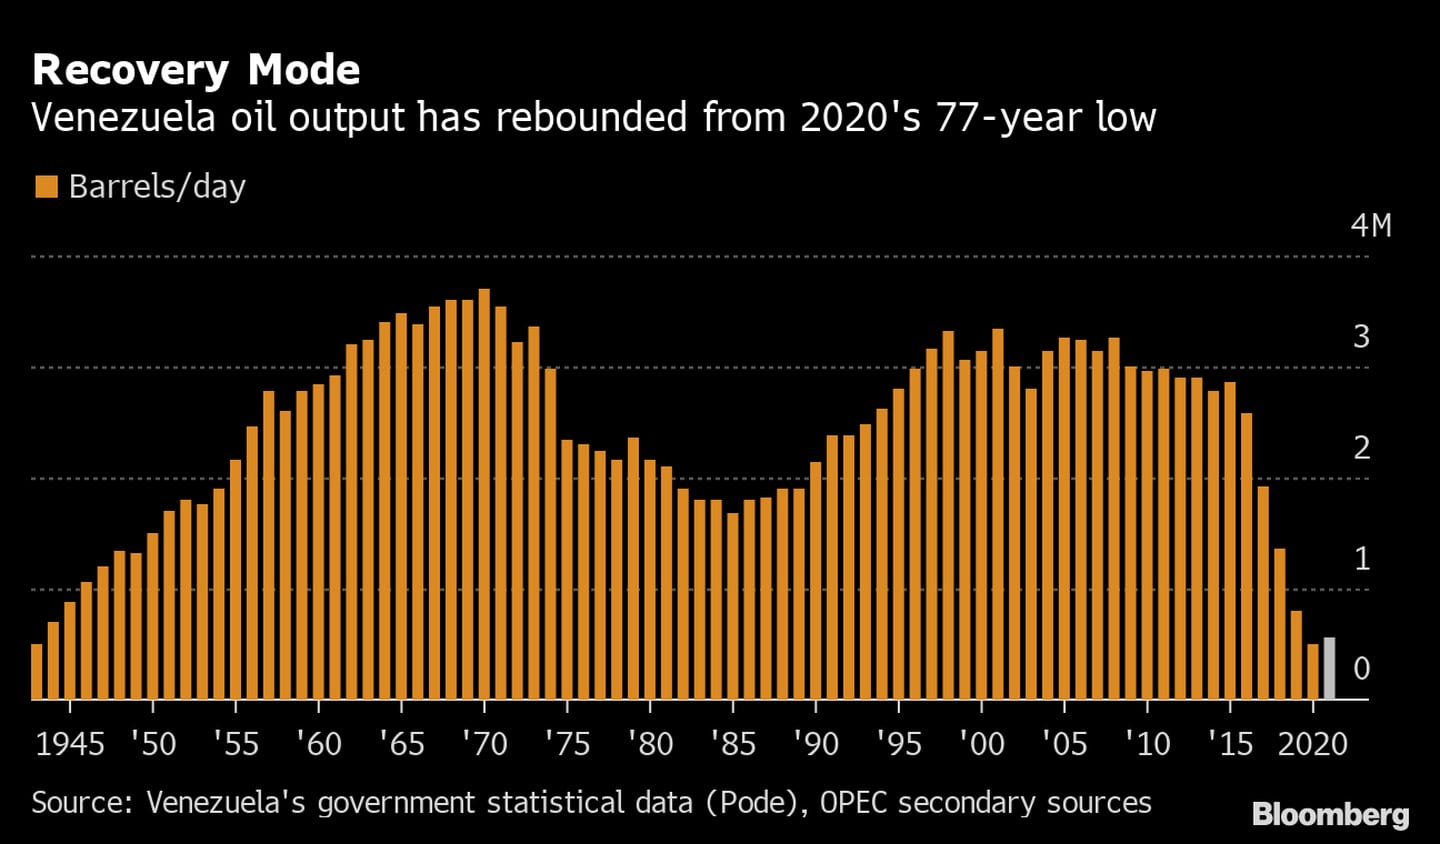 La producción petrolera de Venezuela se ha recuperado desde el mínimo de 77 año alcanzado en 2020. dfd